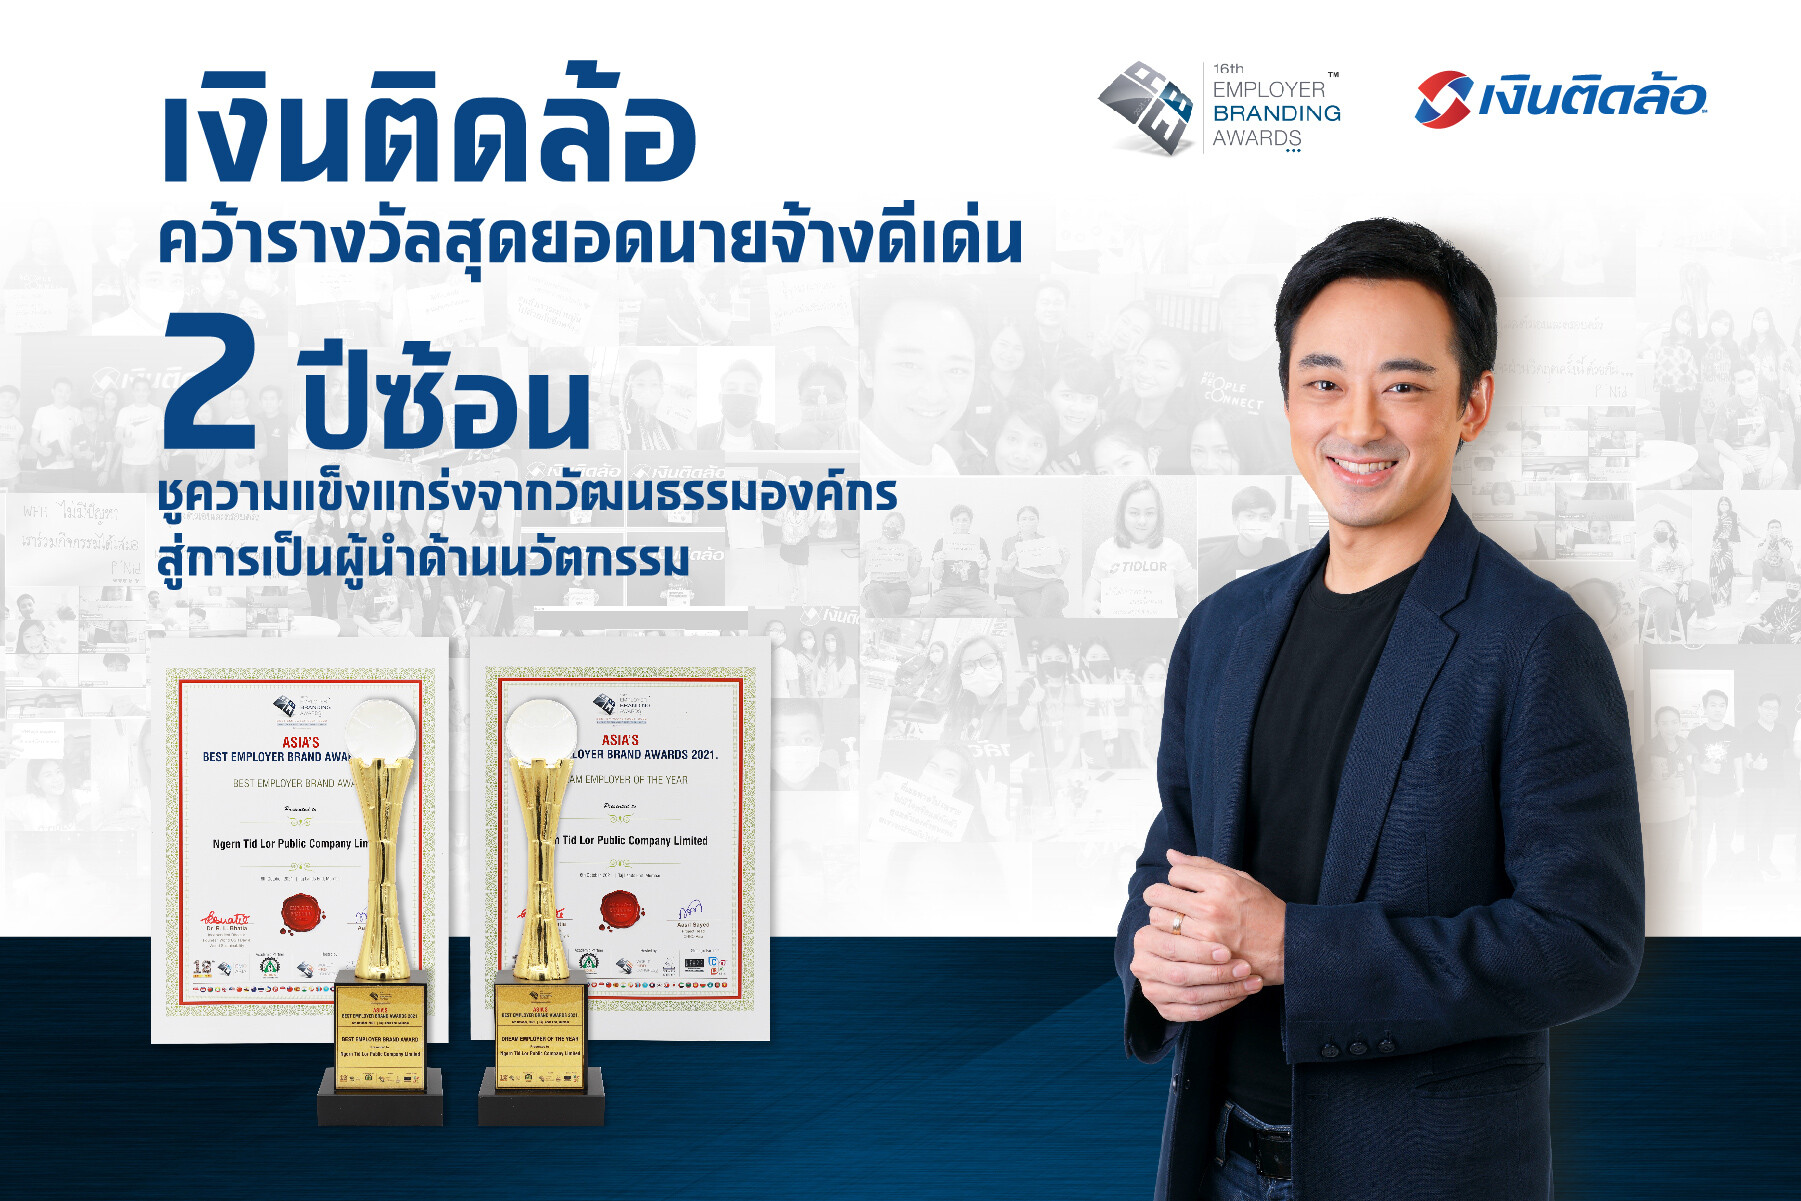 "เงินติดล้อ" คว้ารางวัลชนะเลิศ จากเวที Asia's Employer Brand Awards ต่อเนื่อง 2 ปีซ้อน ชูความแข็งแกร่งจากวัฒนธรรมองค์กร สู่การเป็นองค์กรผู้นำด้านนวัตกรรม